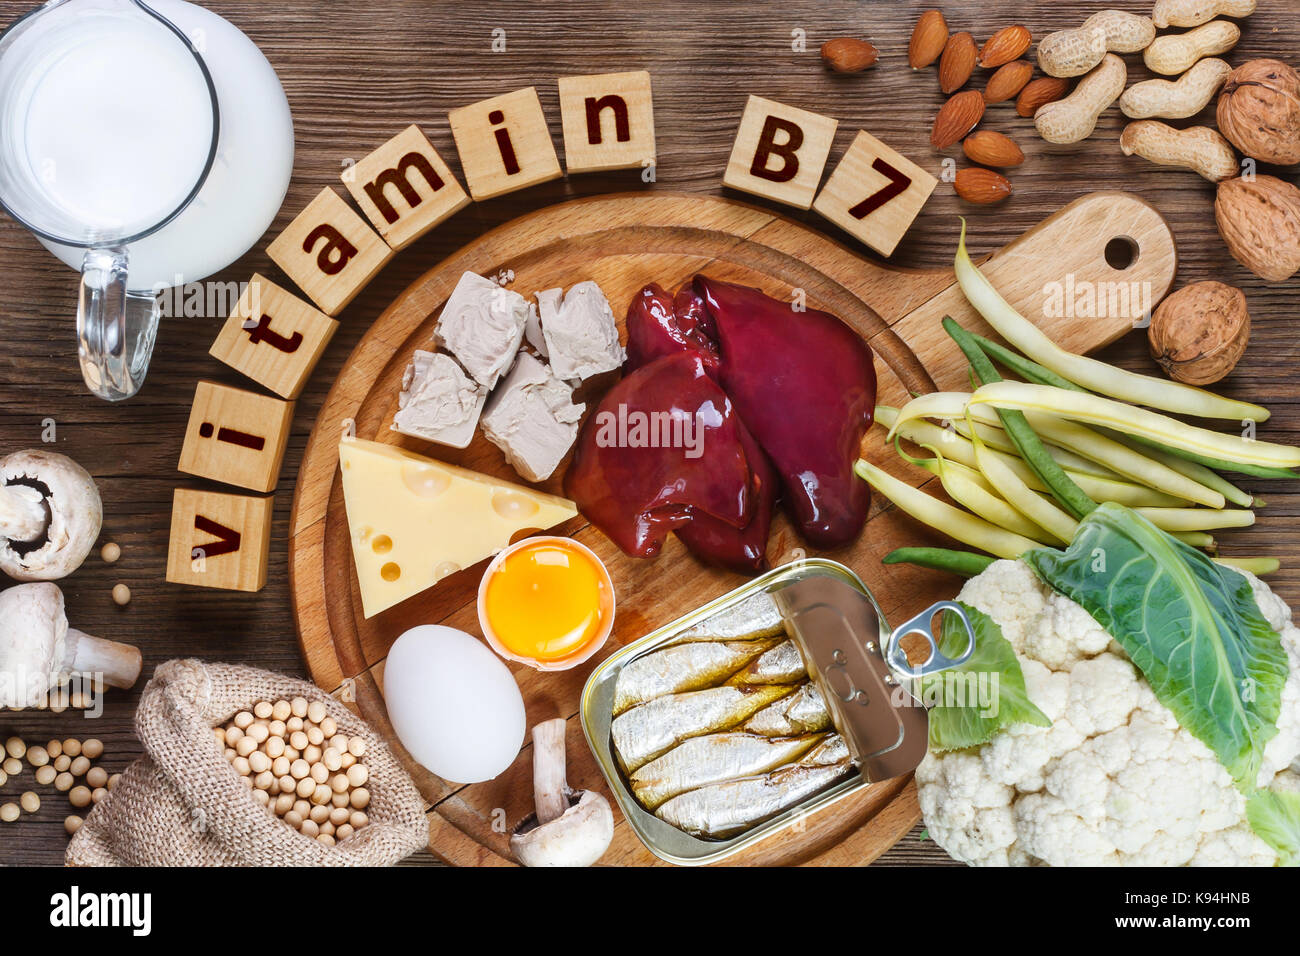 Lebensmittel, die reich an Vitamin B7 (Biotin). Lebensmittel wie Leber, Eigelb, Hefe, Käse, Sardinen, Soja, Milch, Blumenkohl, grüne Bohnen, Pilze, Erdnüsse, w Stockfoto